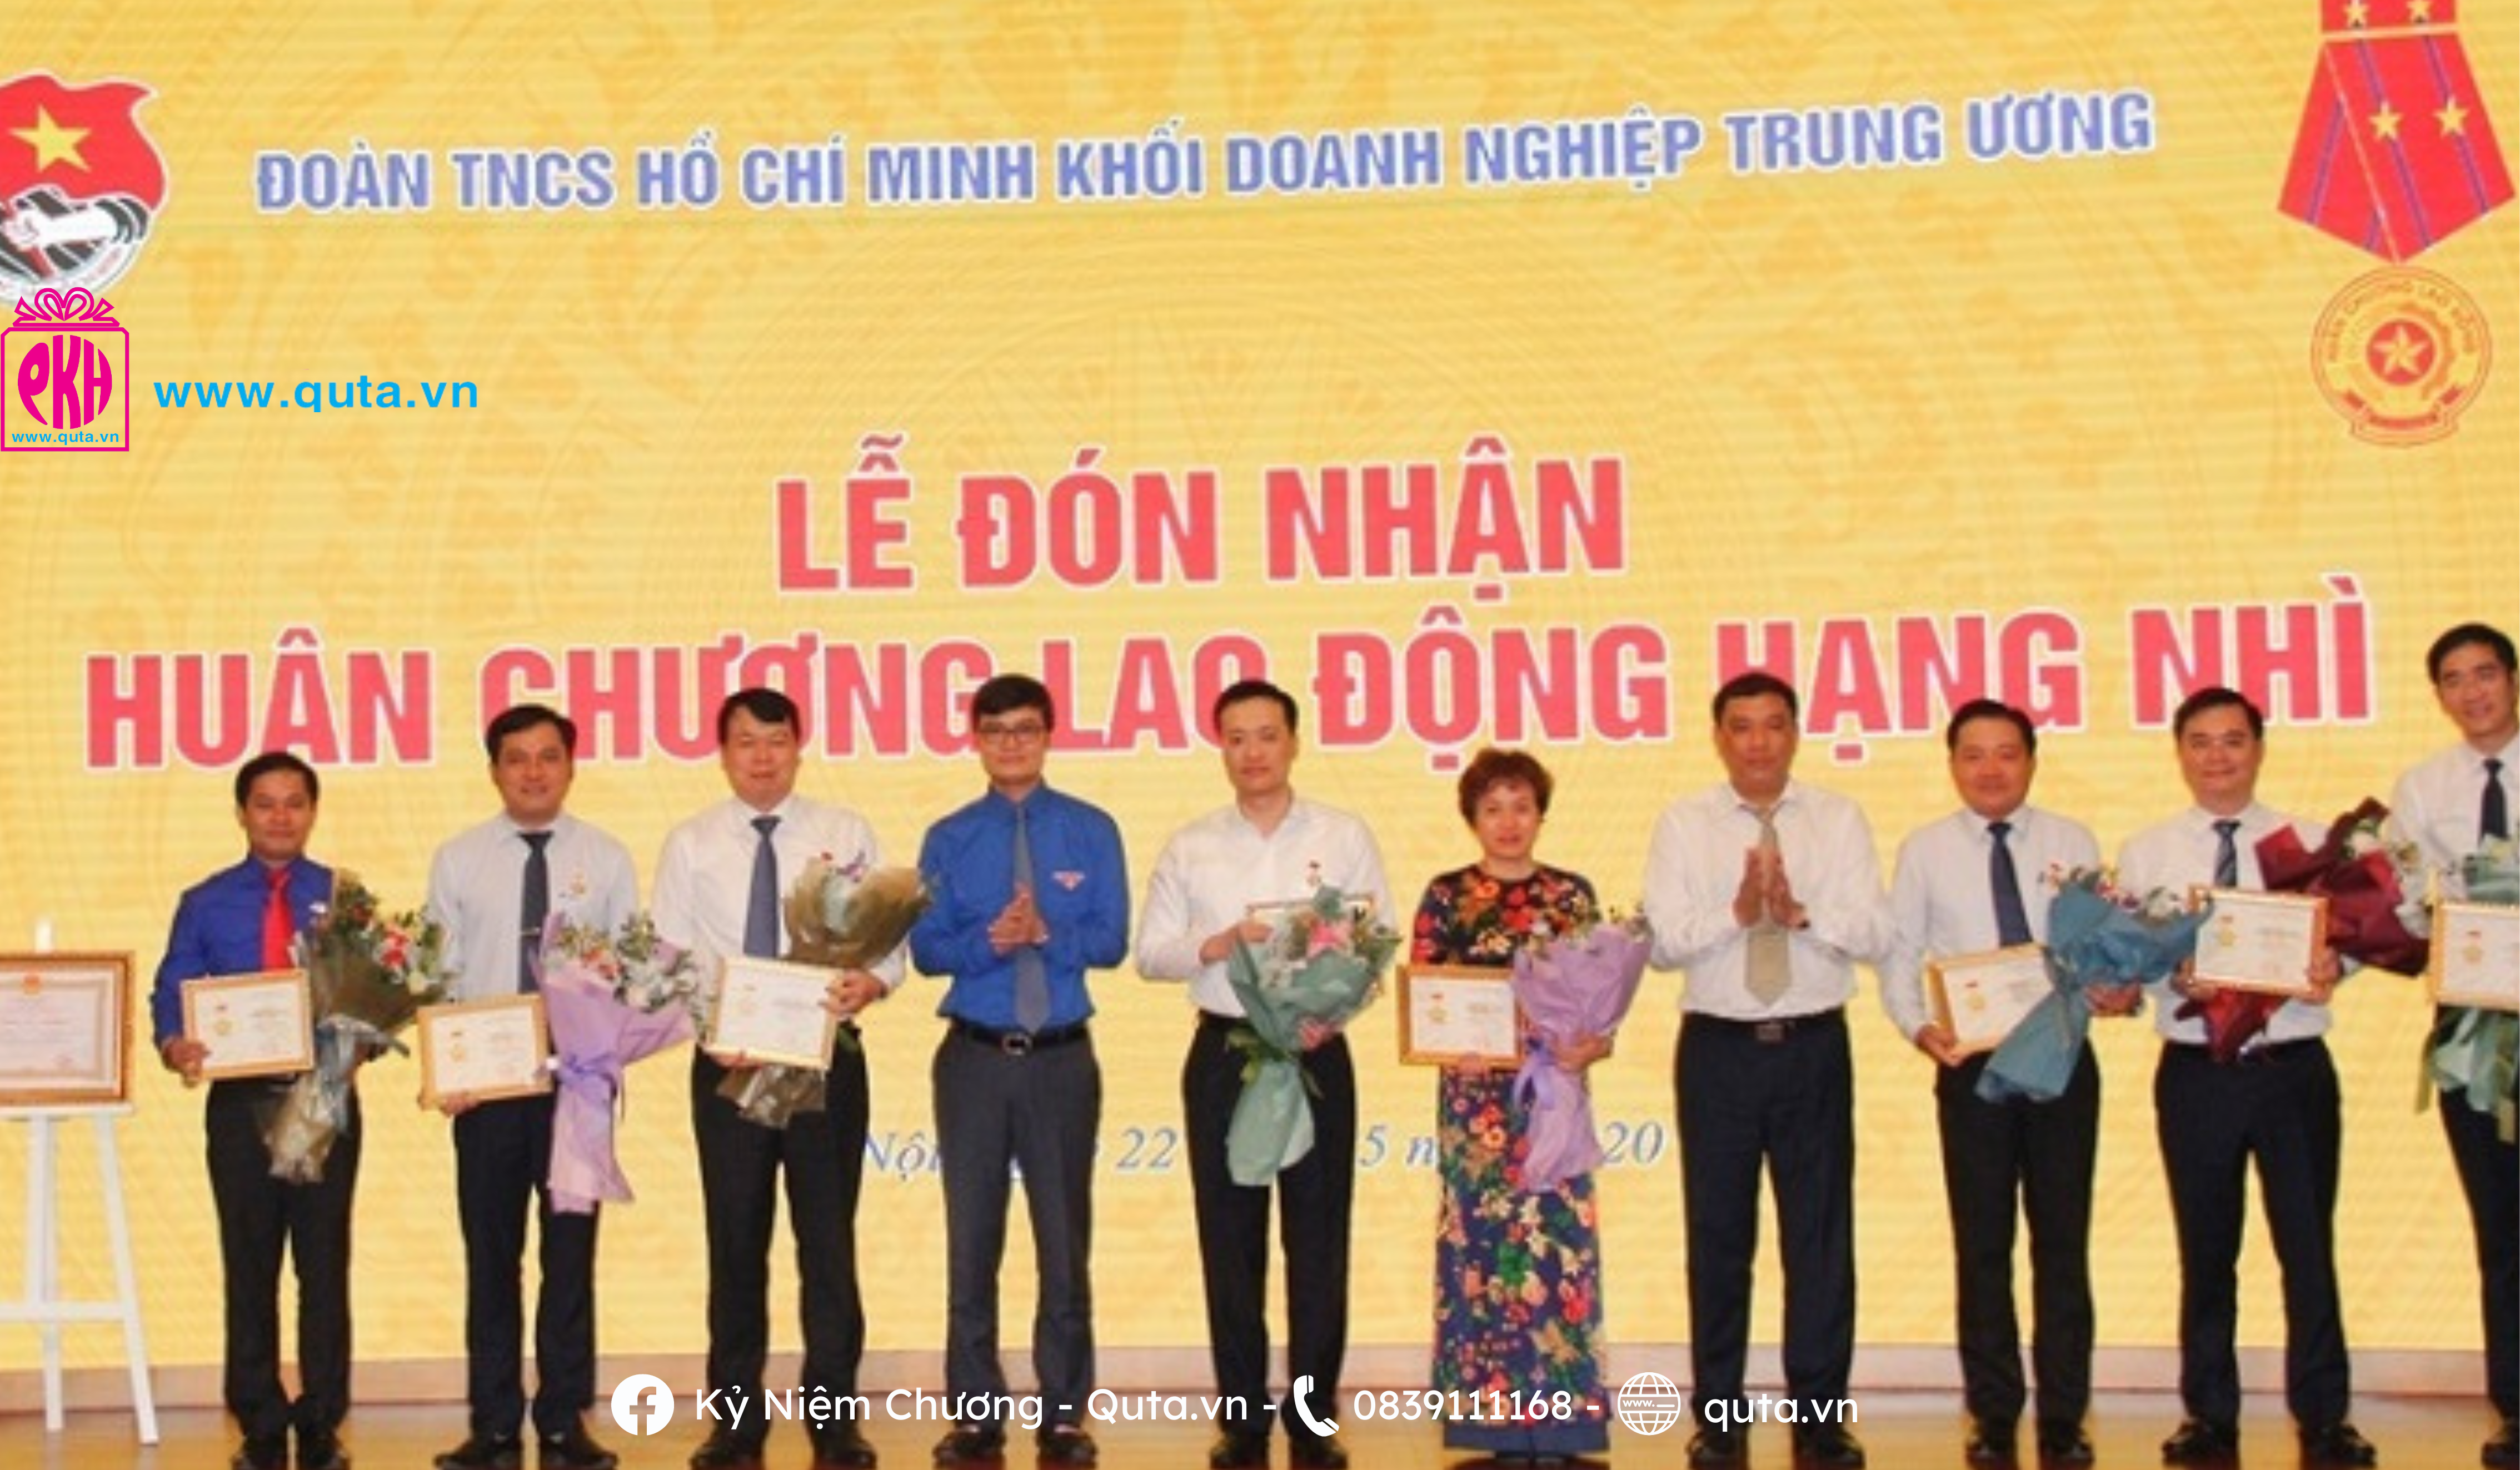 Vietcombank đón nhận kỷ niệm chương 'Vì thế hệ trẻ'